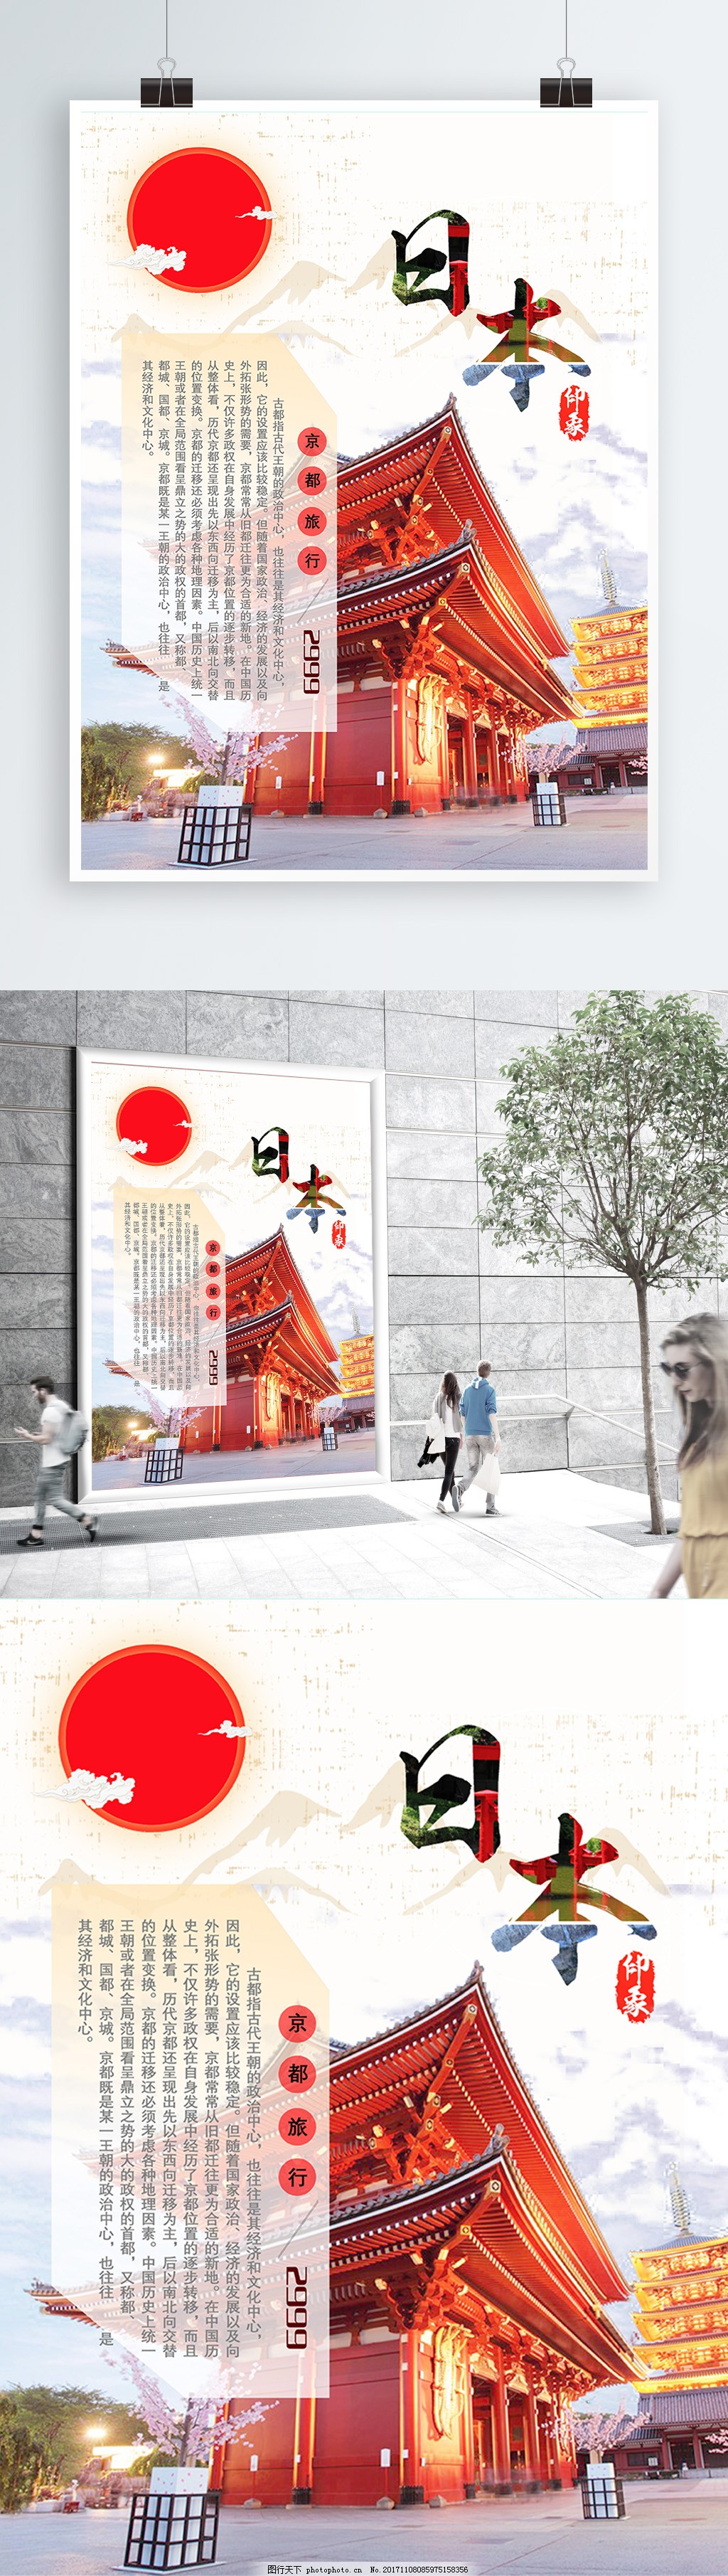 日本京都和风旅行海报图片 旅游海报 海报设计 图行天下素材网